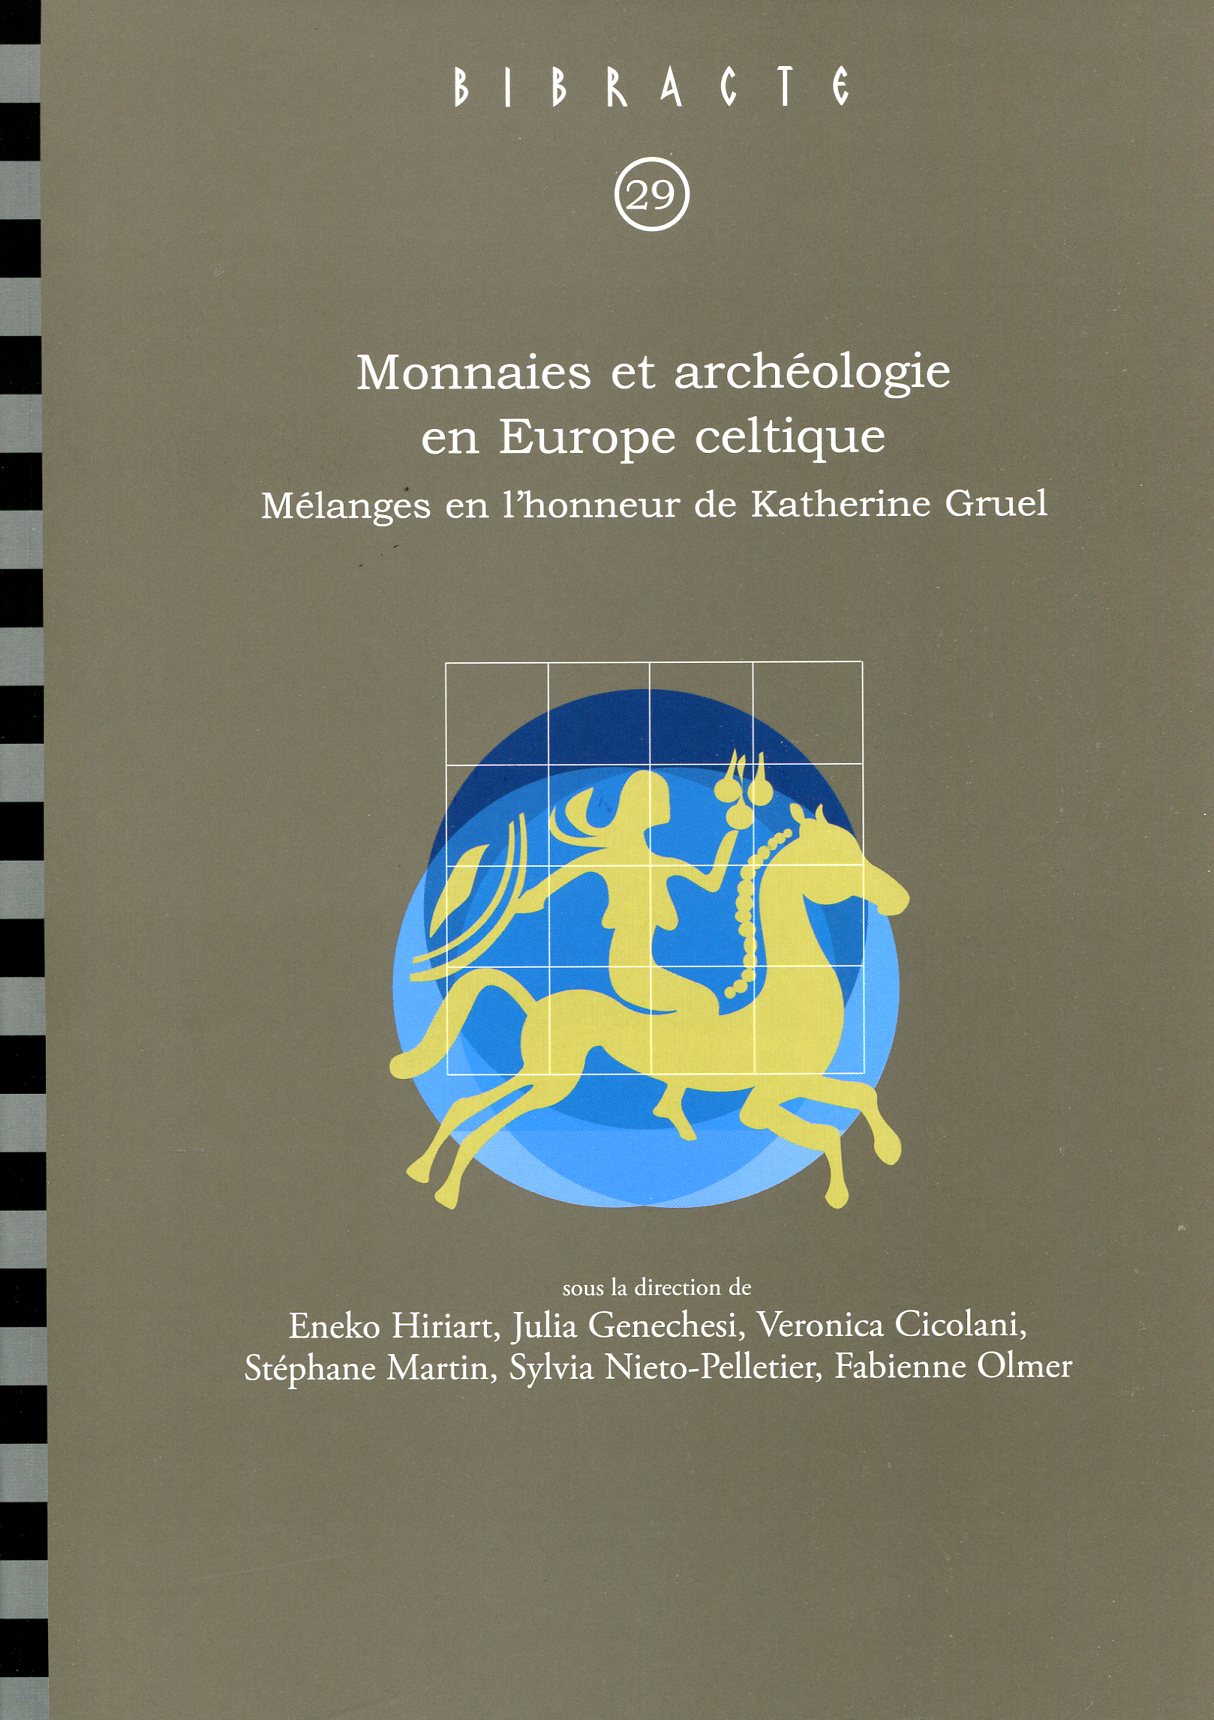 ÉPUISÉ - Monnaies et archéologie en Europe celtique. Mélanges en l'honneur de Katherine Gruel, (Bibracte 29), 2018, 420 p.